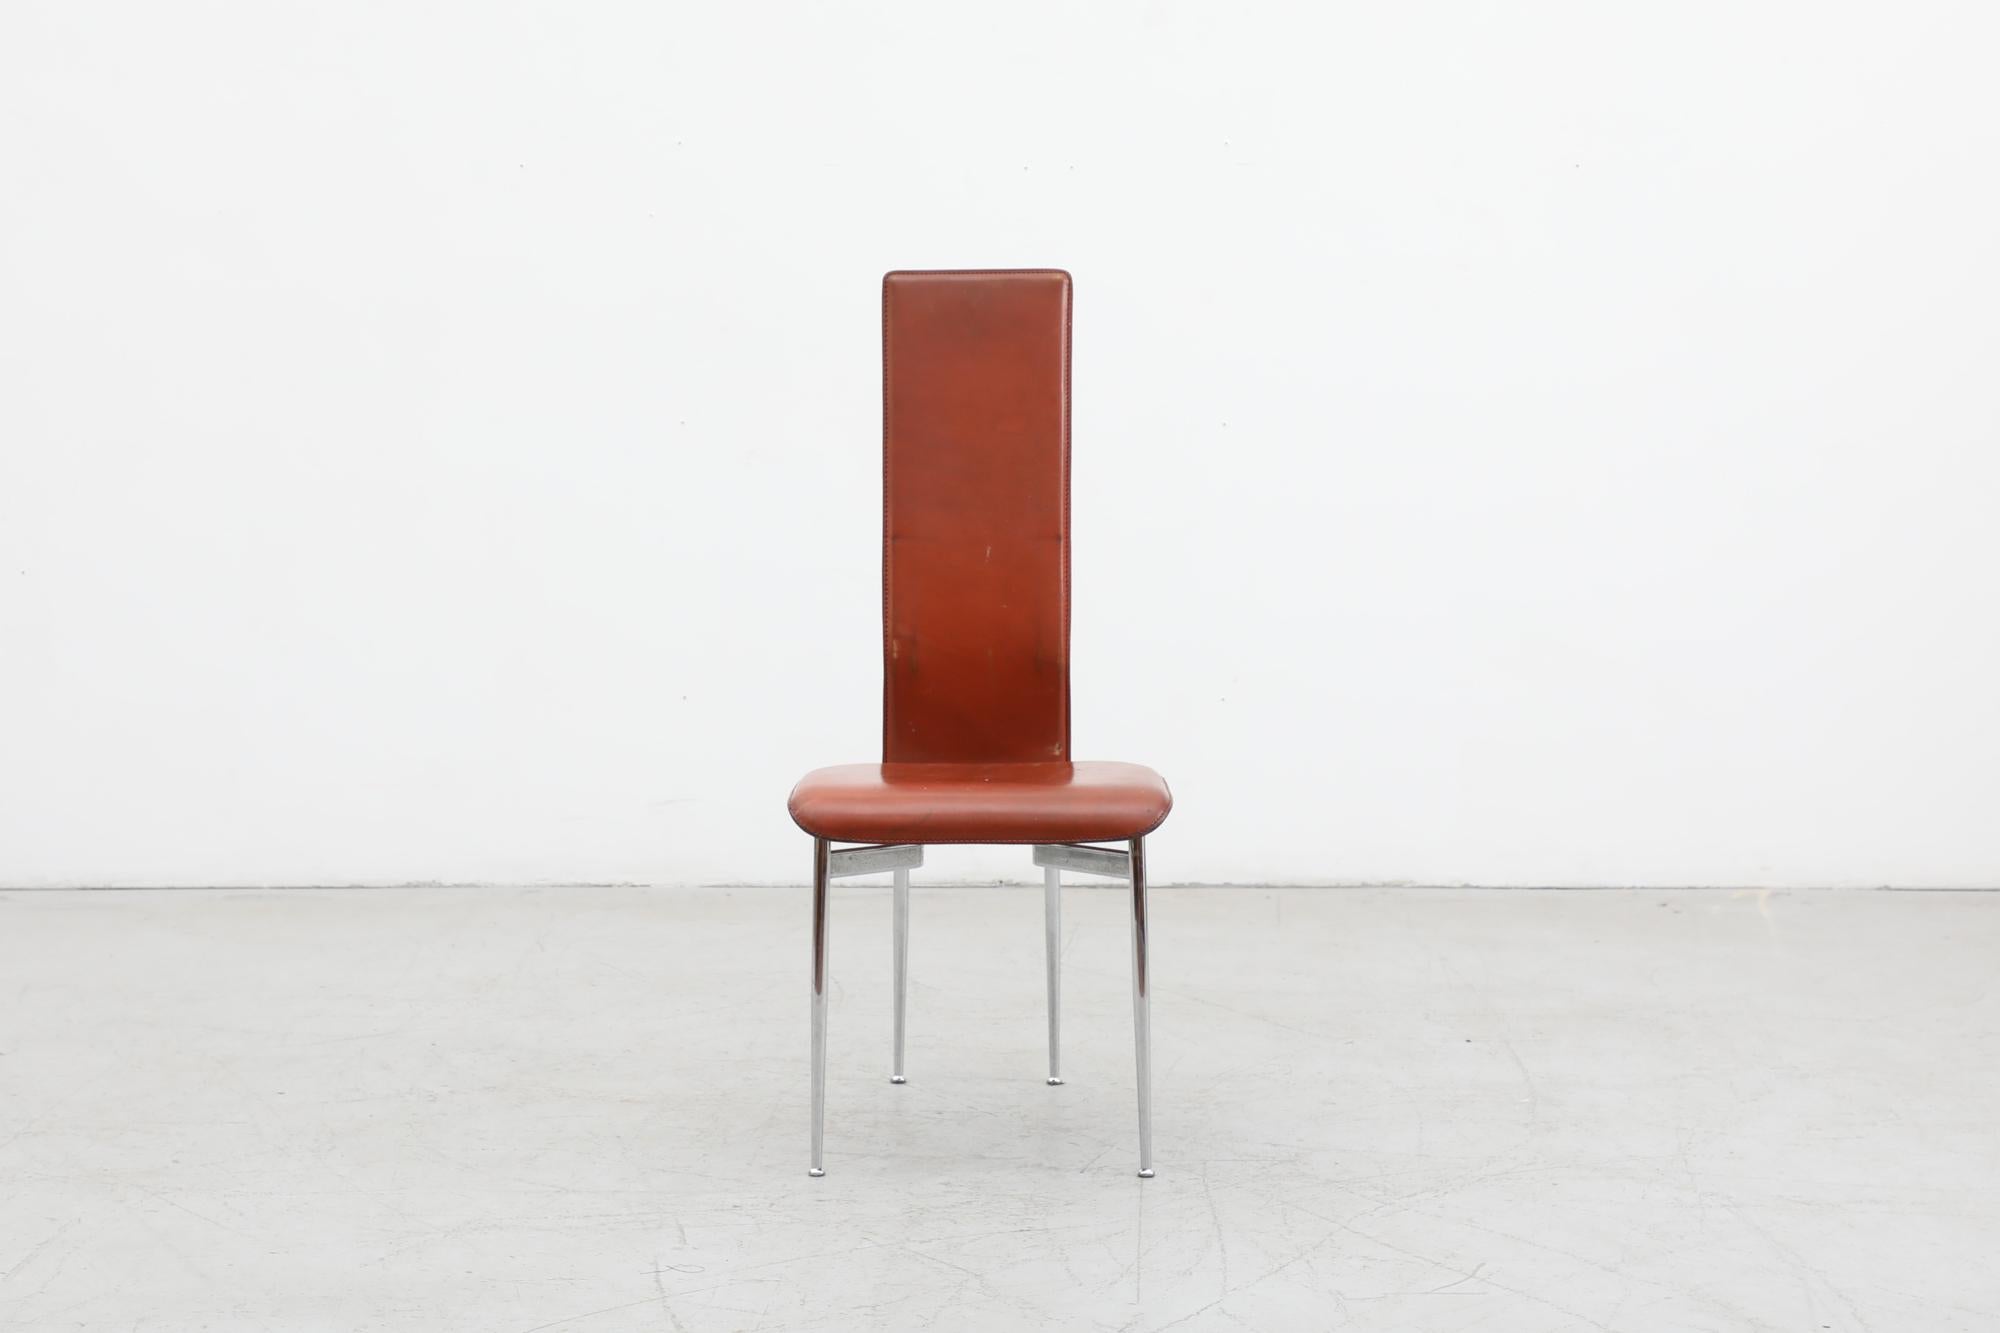 Chaise 'S44' de Giancarlo Vegni & Gianfranco Gualtierotti pour Fasem, années 1980. Cette chaise est dotée d'une assise en cuir cognac et d'une structure chromée. En état d'origine avec une usure visible, notamment des piqûres et une décoloration sur